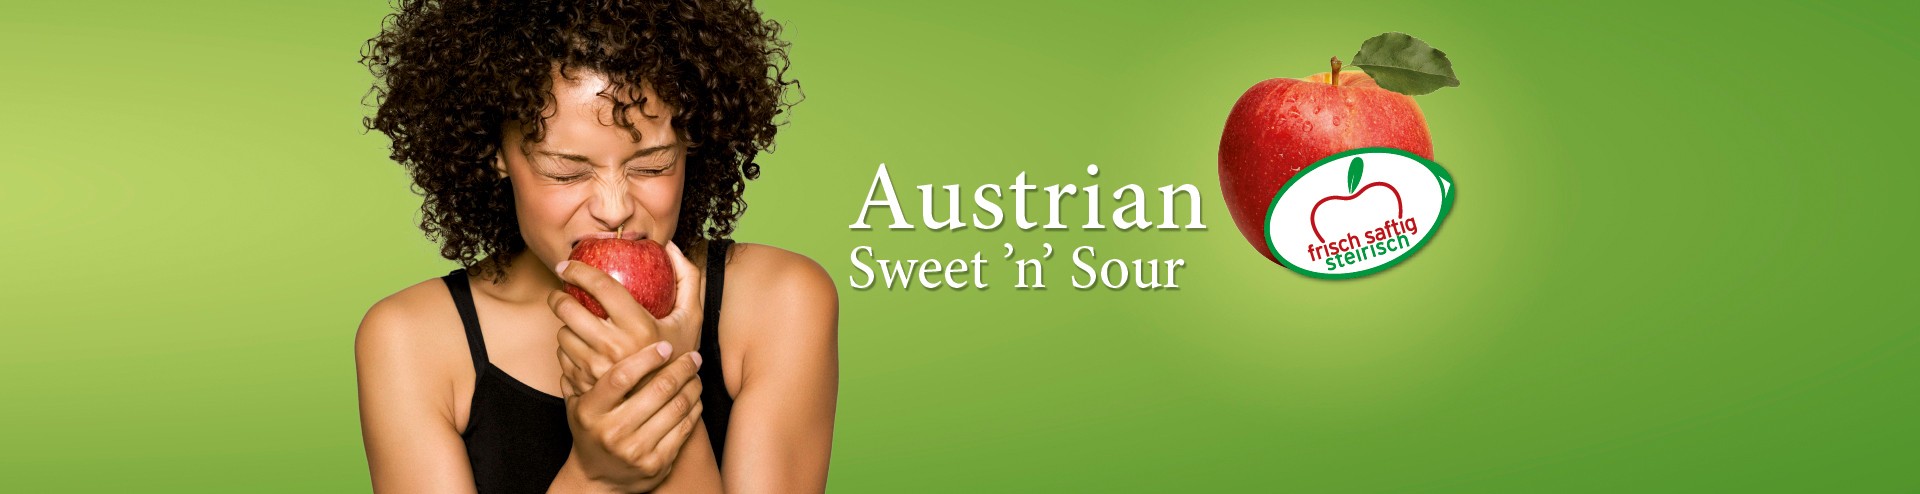 Austrian Sweet 'n' Sour